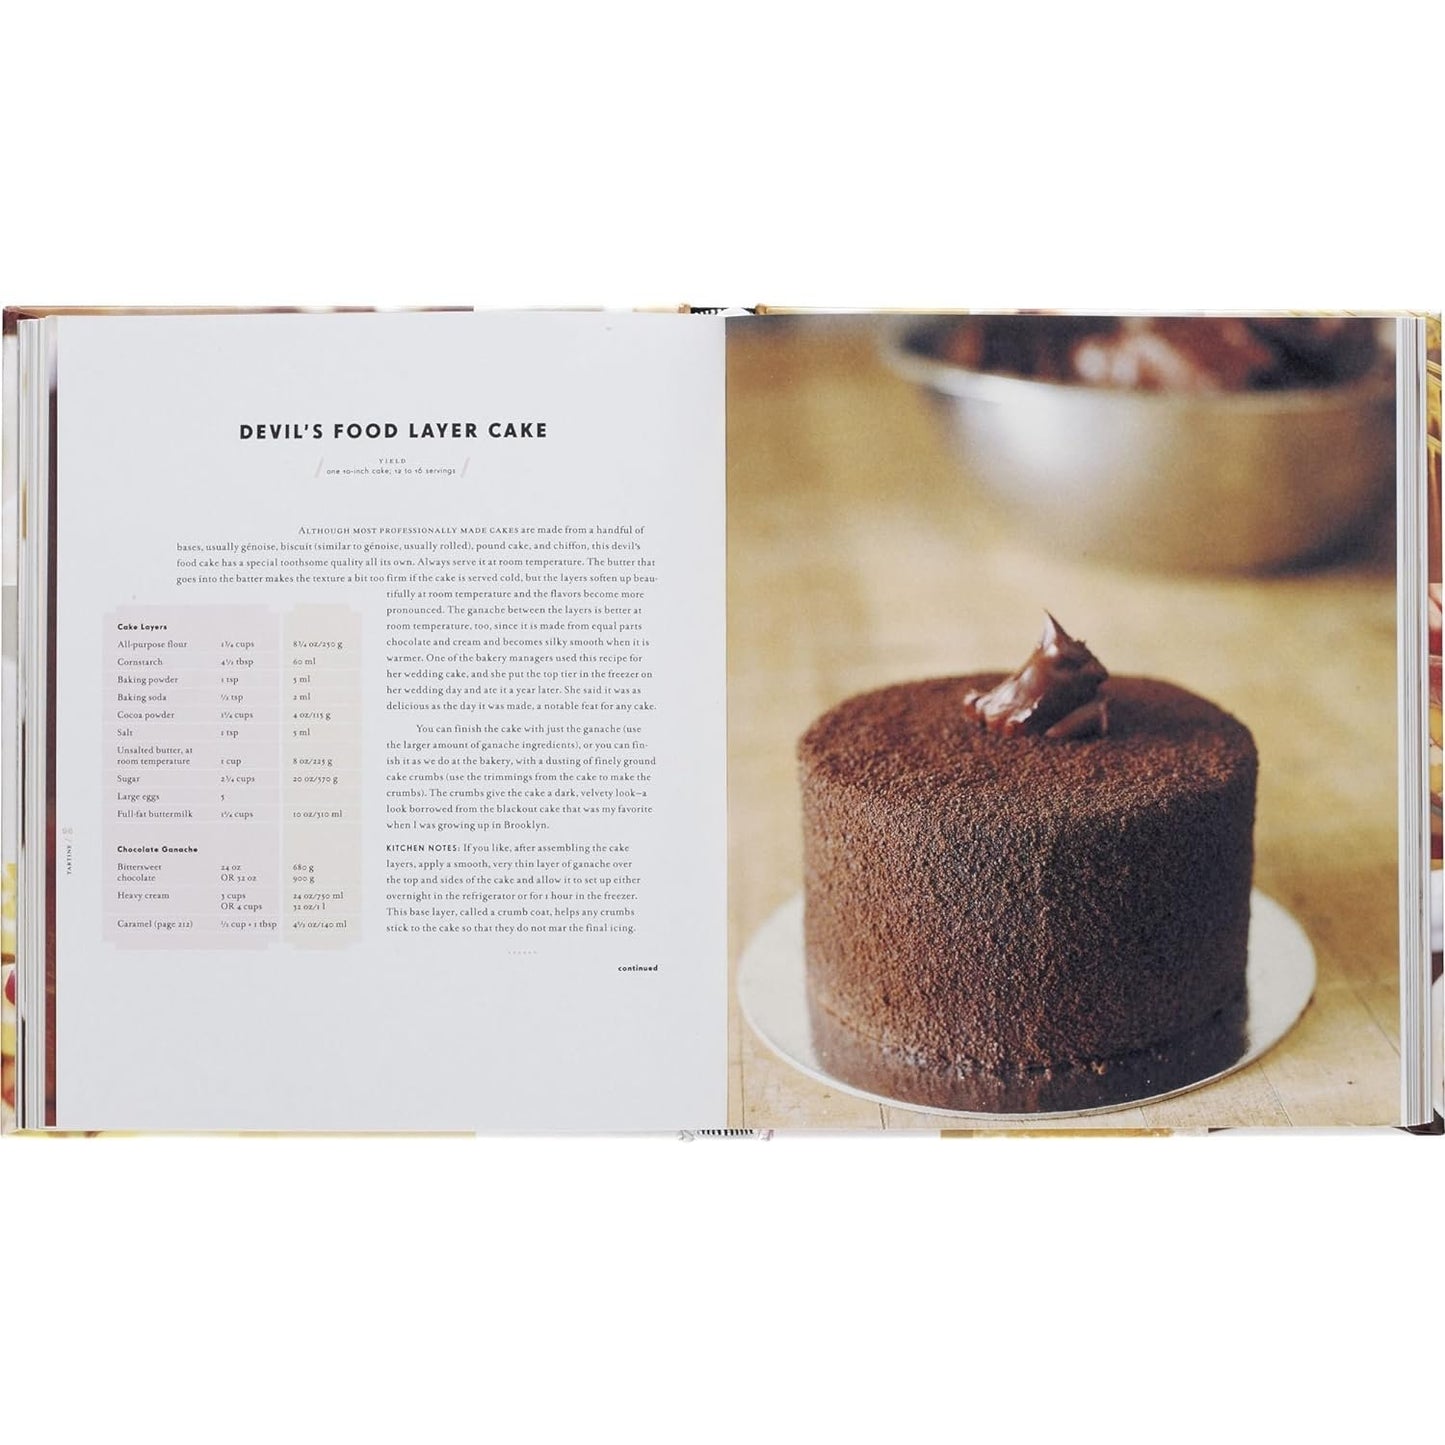 Tartine (Baking Cookbooks, Pastry Books, Dessert Cookbooks, Gifts for Pastry Chefs)